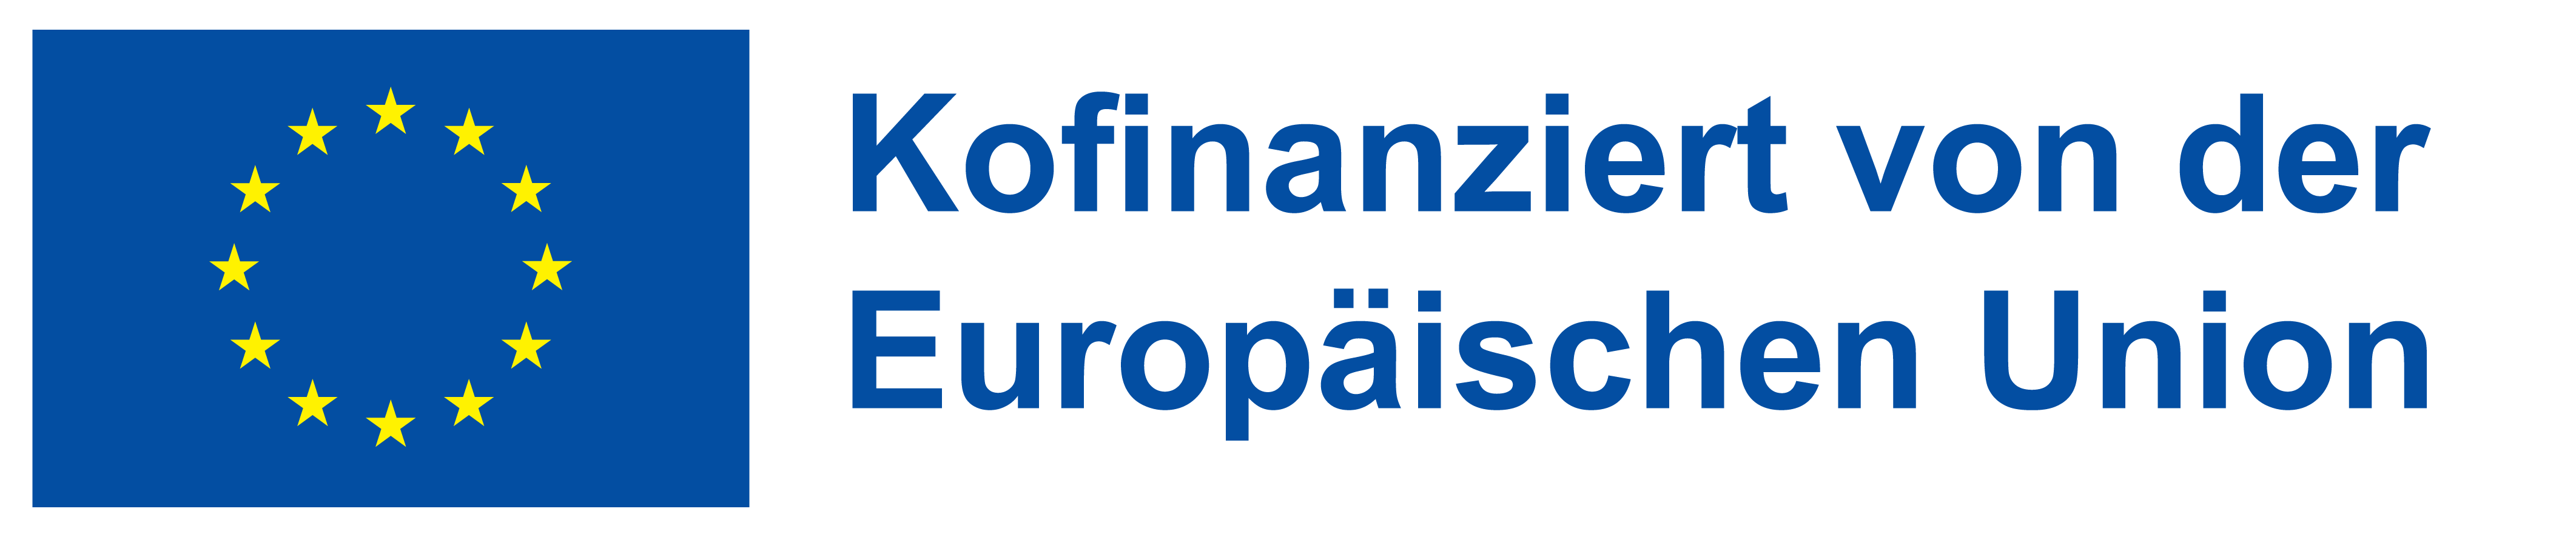 Europafahne, daneben Text in blauer Schrift: Kofinanziert von der Europäischen Union